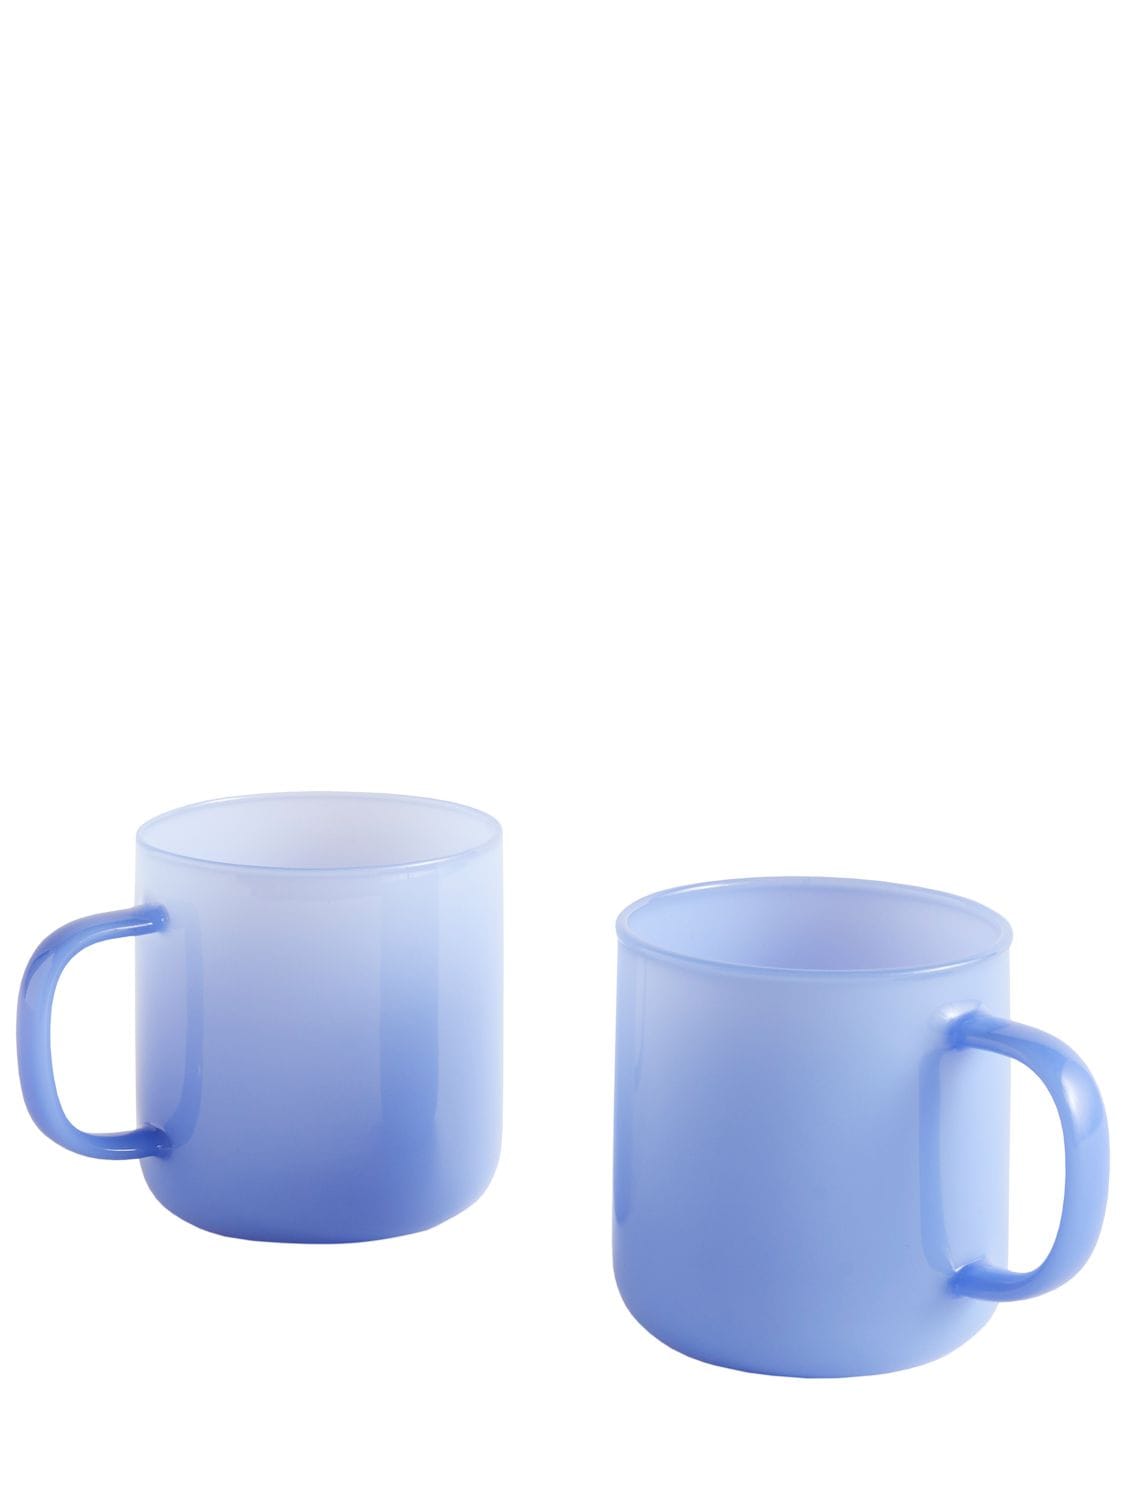 Image of Set Of 2 Borosilicate Mugs